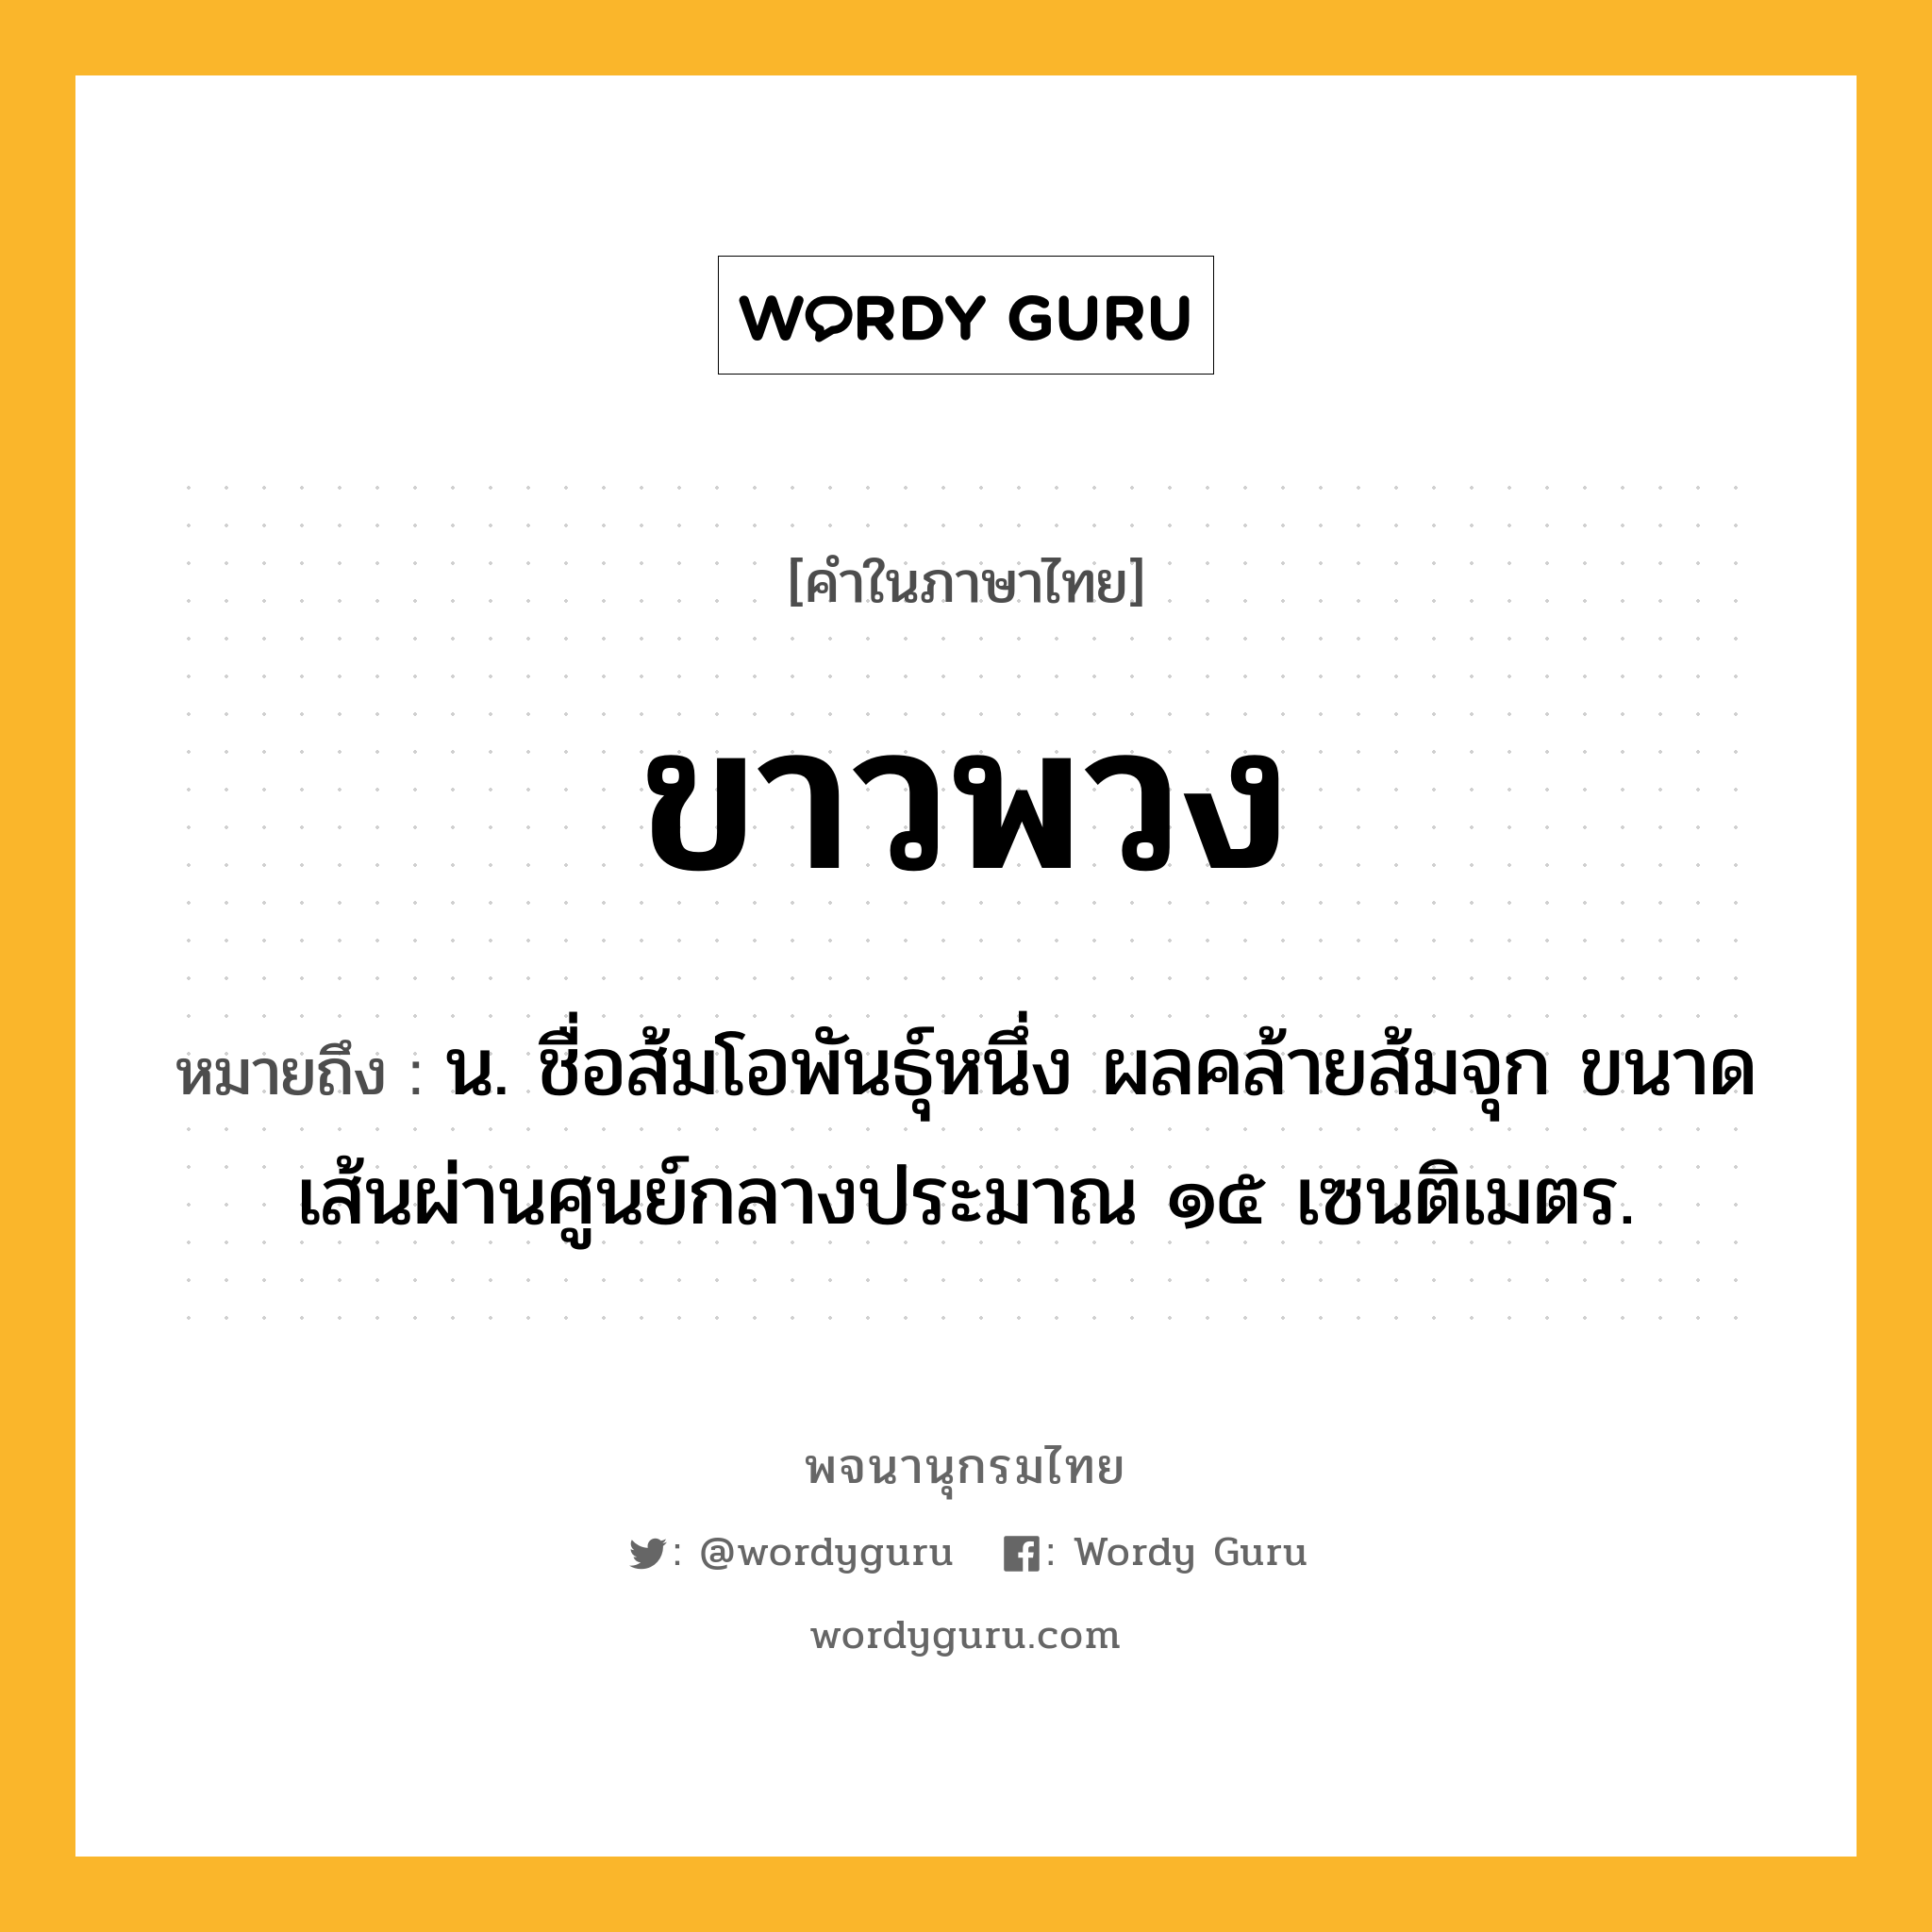 ขาวพวง ความหมาย หมายถึงอะไร?, คำในภาษาไทย ขาวพวง หมายถึง น. ชื่อส้มโอพันธุ์หนึ่ง ผลคล้ายส้มจุก ขนาดเส้นผ่านศูนย์กลางประมาณ ๑๕ เซนติเมตร.